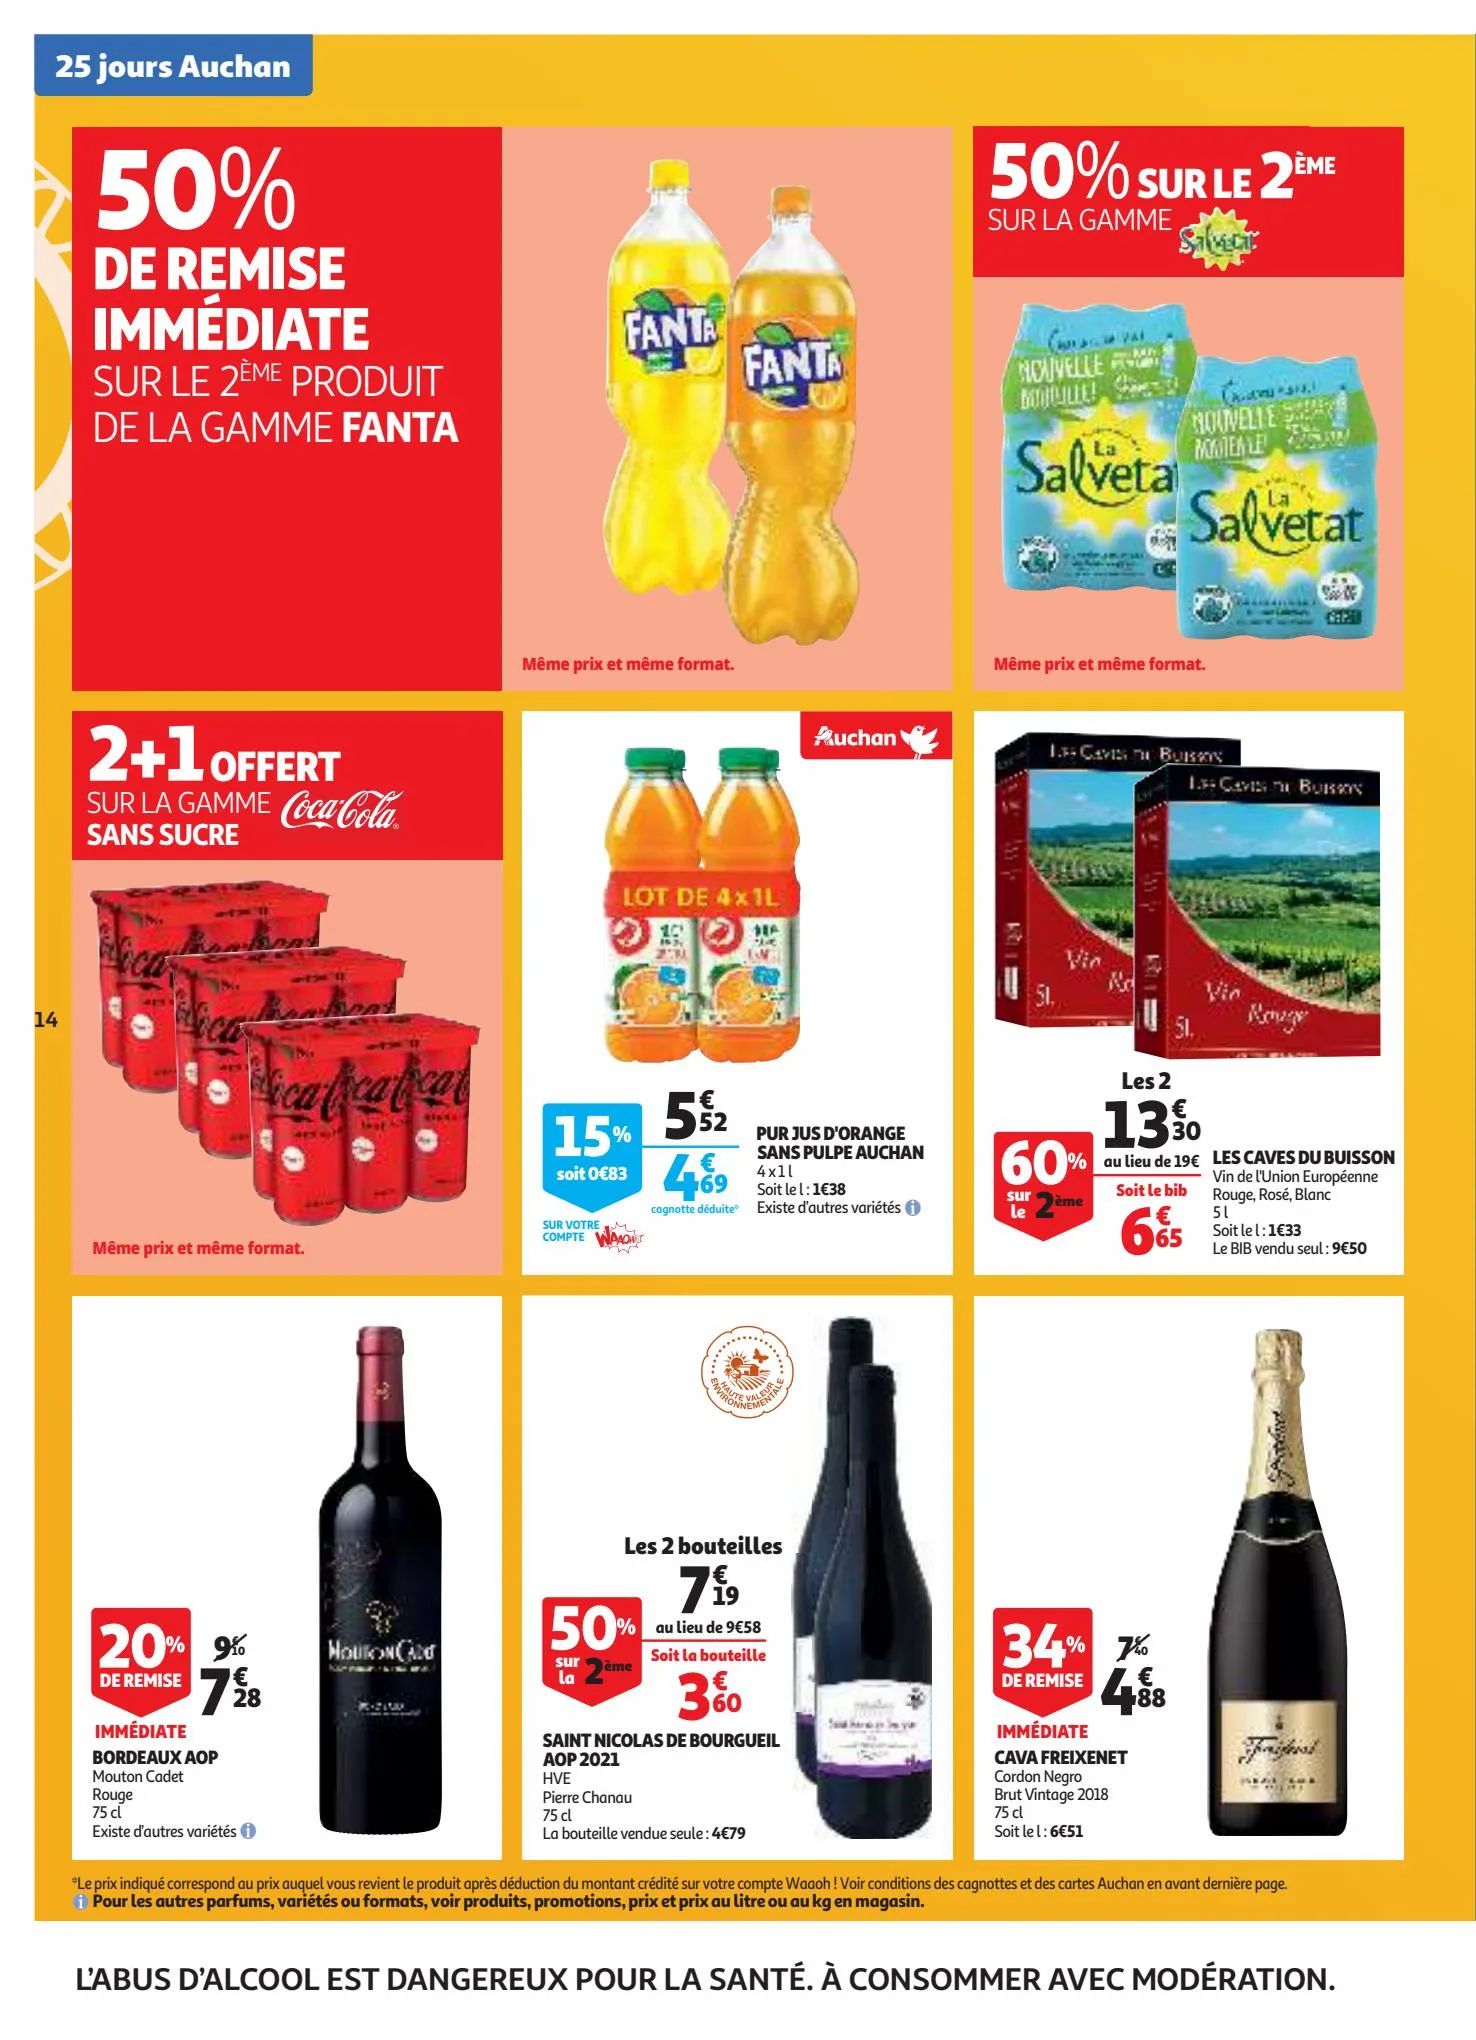 Catalogue 25 jours Auchan, page 00014